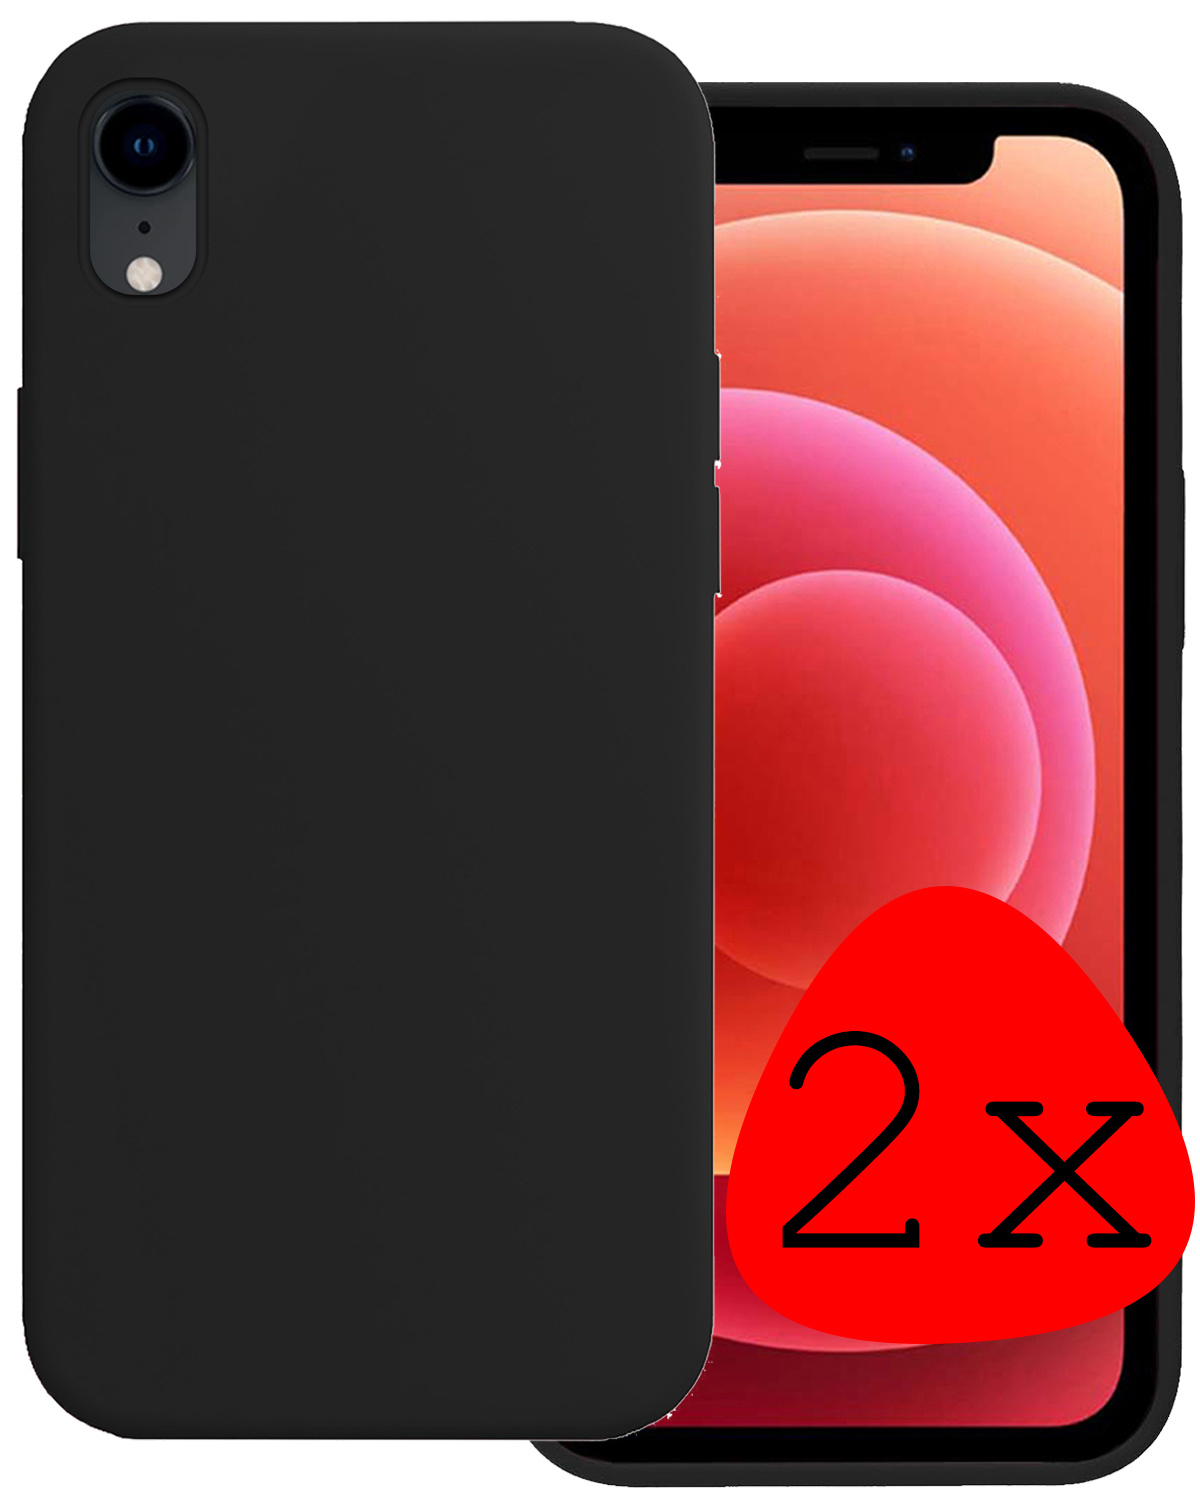 BASEY. Hoes voor iPhone XR Hoesje Siliconen Back Cover Case - Hoes voor iPhone XR Hoes Silicone Case Hoesje - Zwart - 2 Stuks